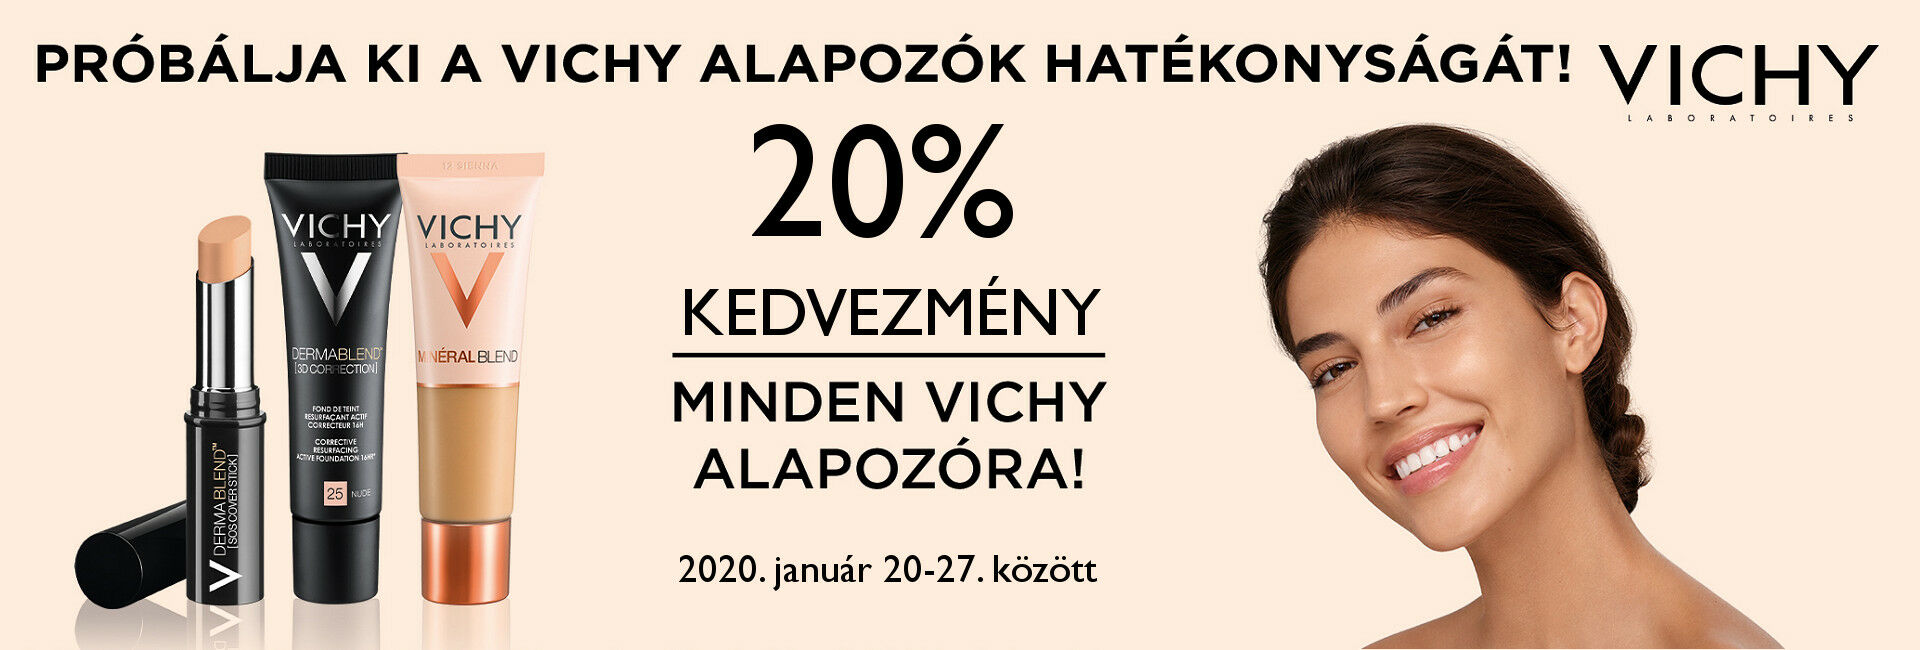 2020. január 20-27. között minden Vichy alapozó árából 20% kedvezményt adunk!